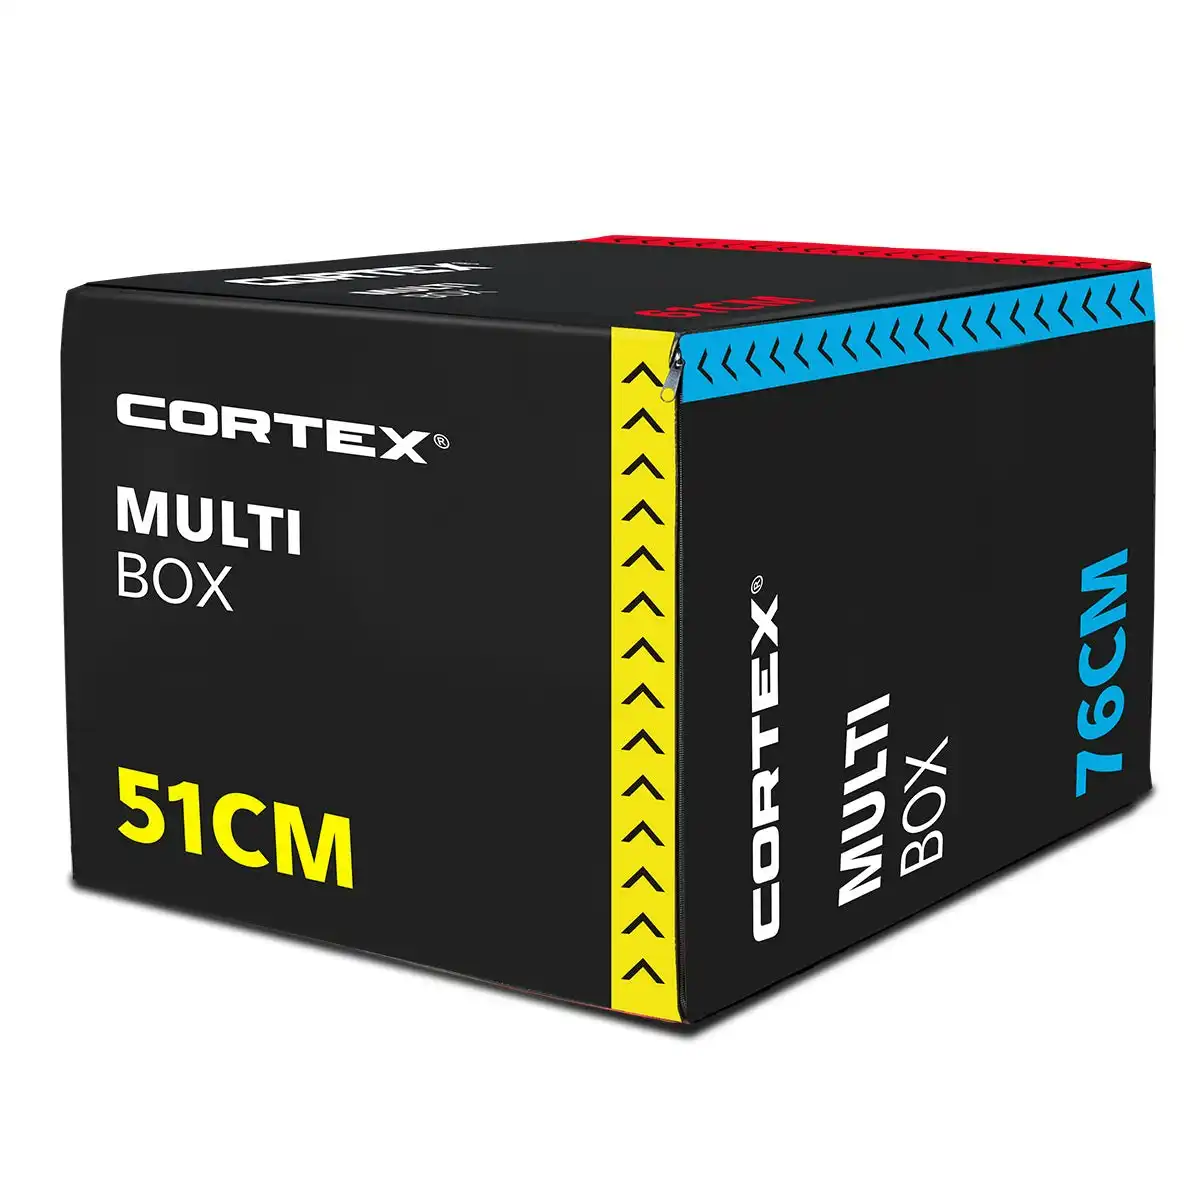 Cortex 3 in 1 Plyo Box